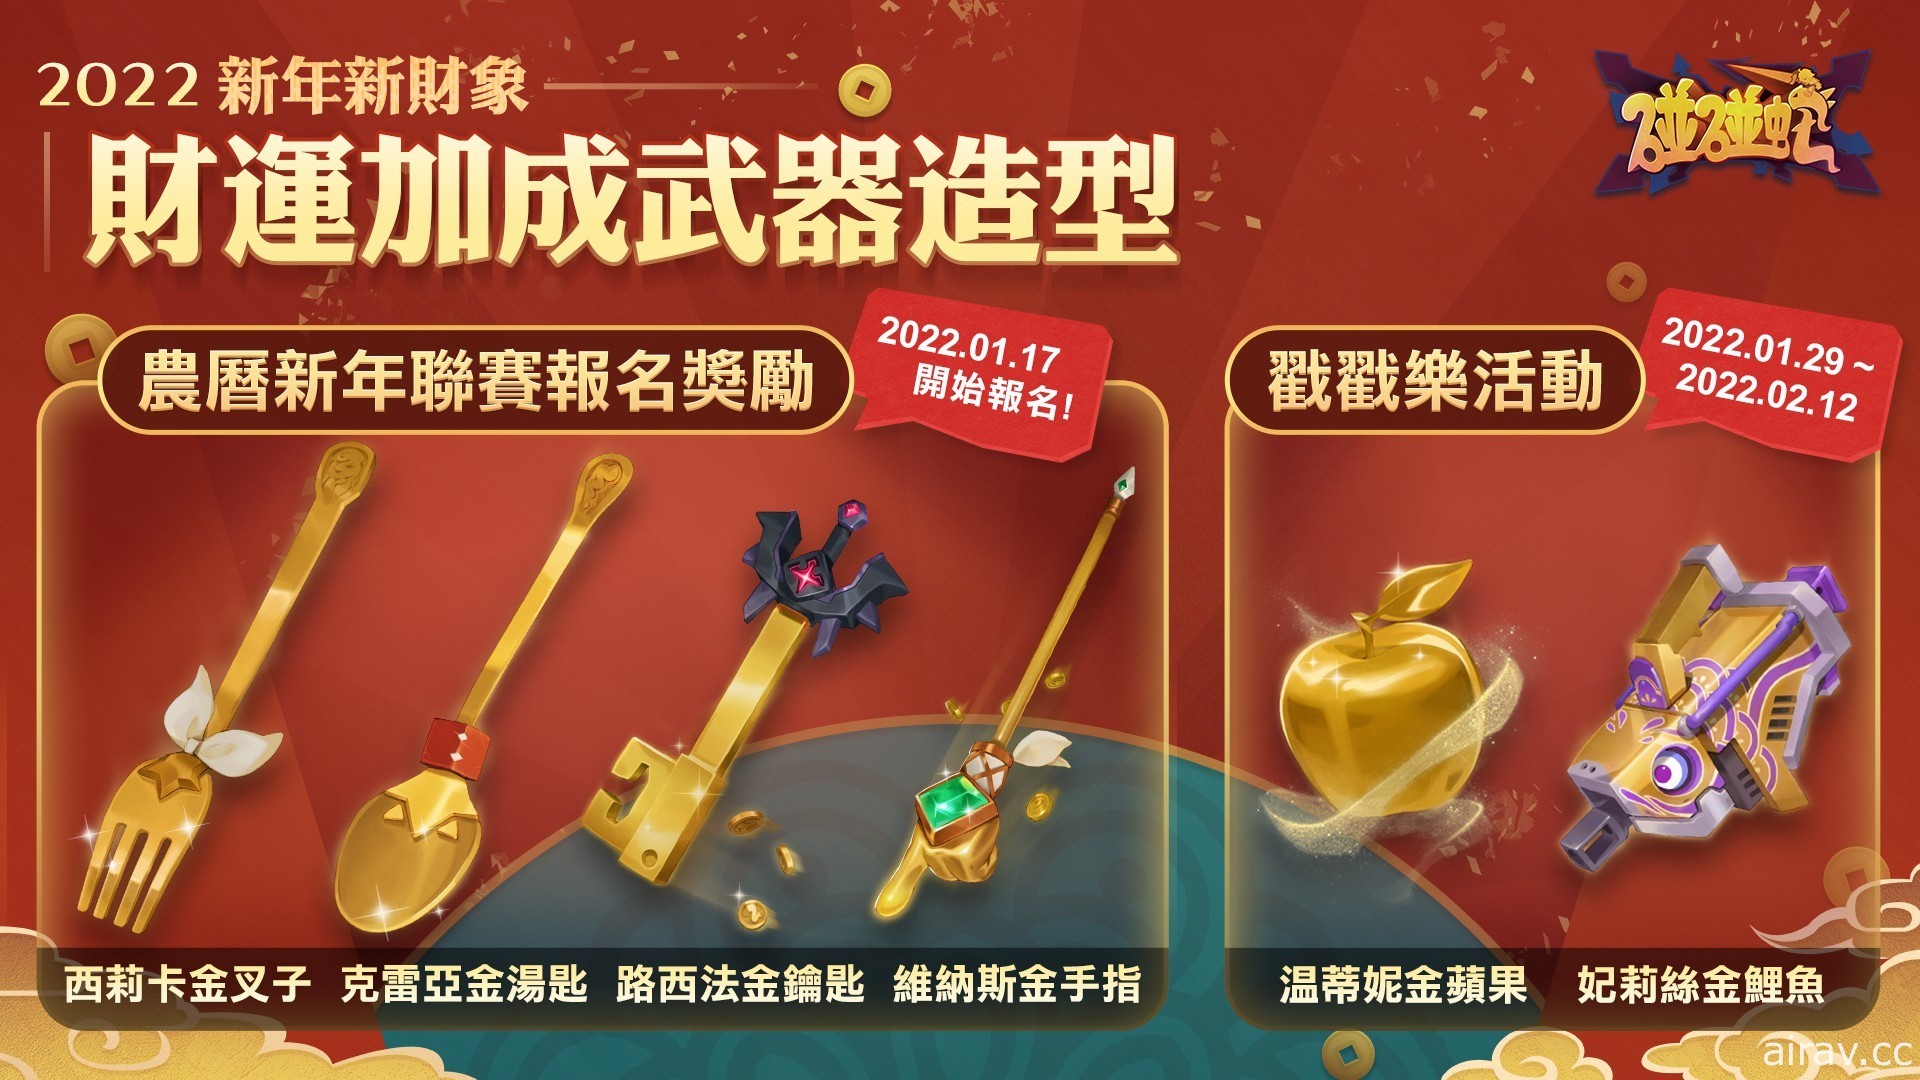 《碰碰蛇》举办“新年节日赛” 同步推出限定小活动及武器造型